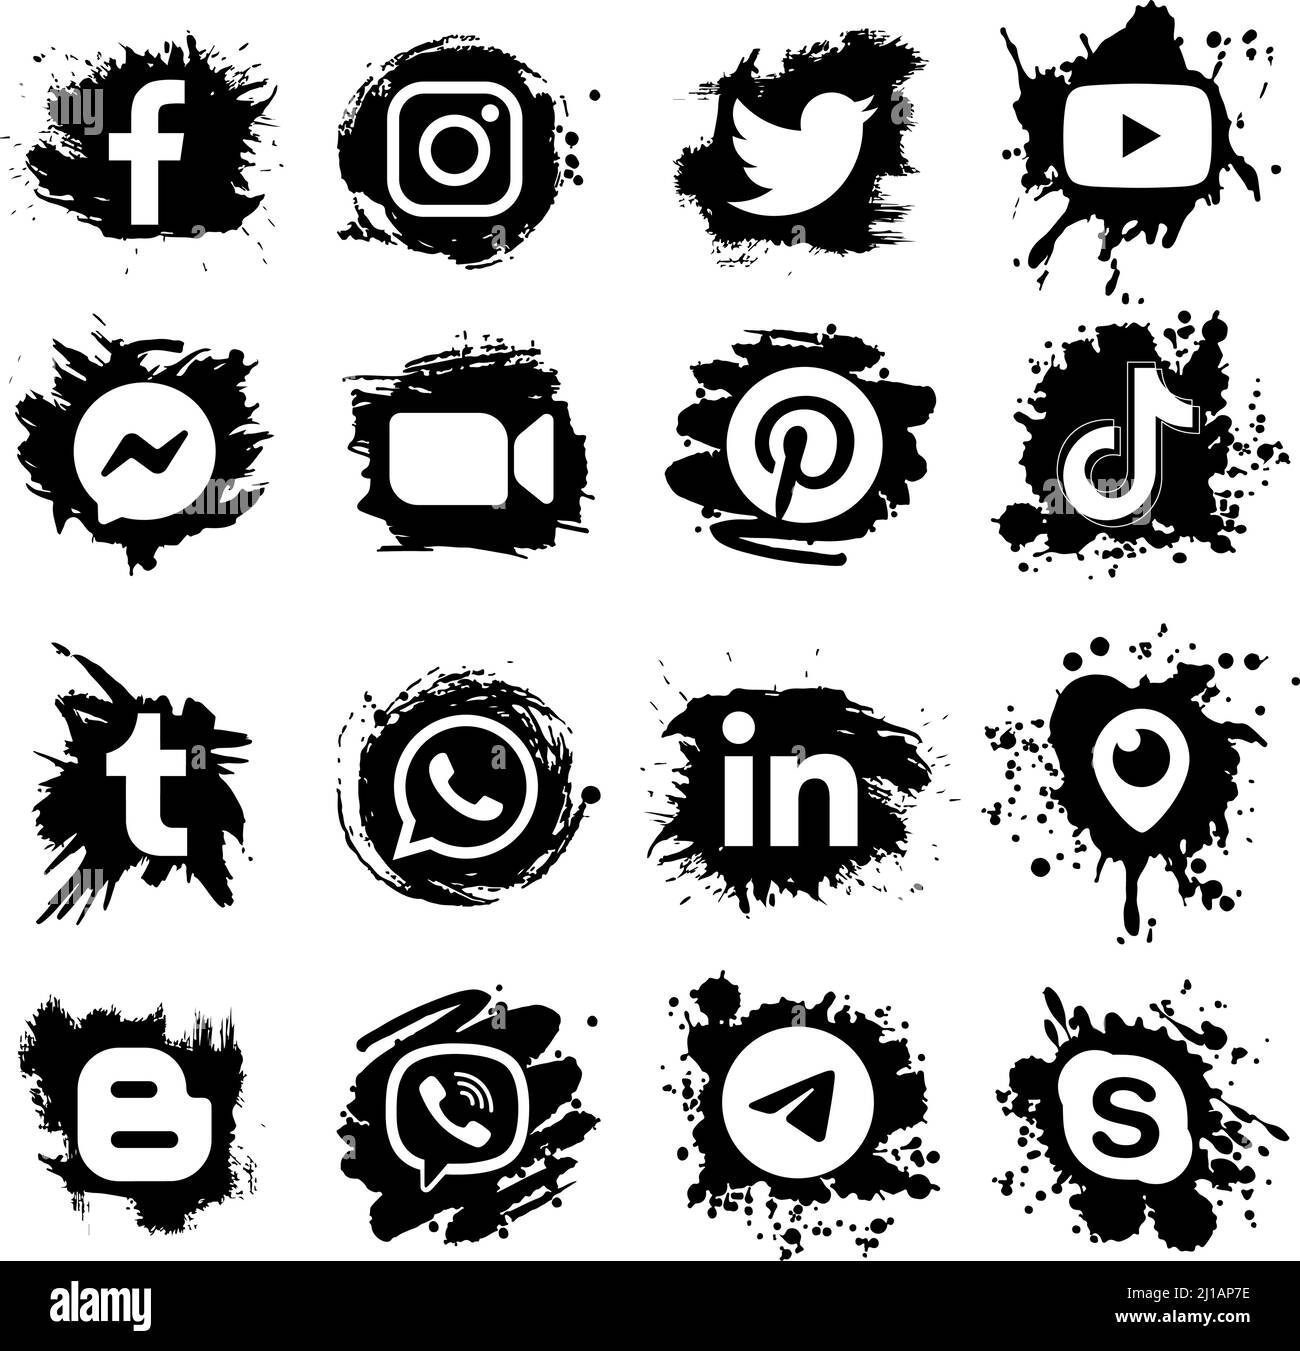 Kiev, Ucrania - 03 de julio de 2021: Conjunto de populares medios sociales y aplicaciones móviles iconos en negro de pintura de diseño de puntos: Facebook, Twitter, Instagram, LinkedIn, Ilustración del Vector